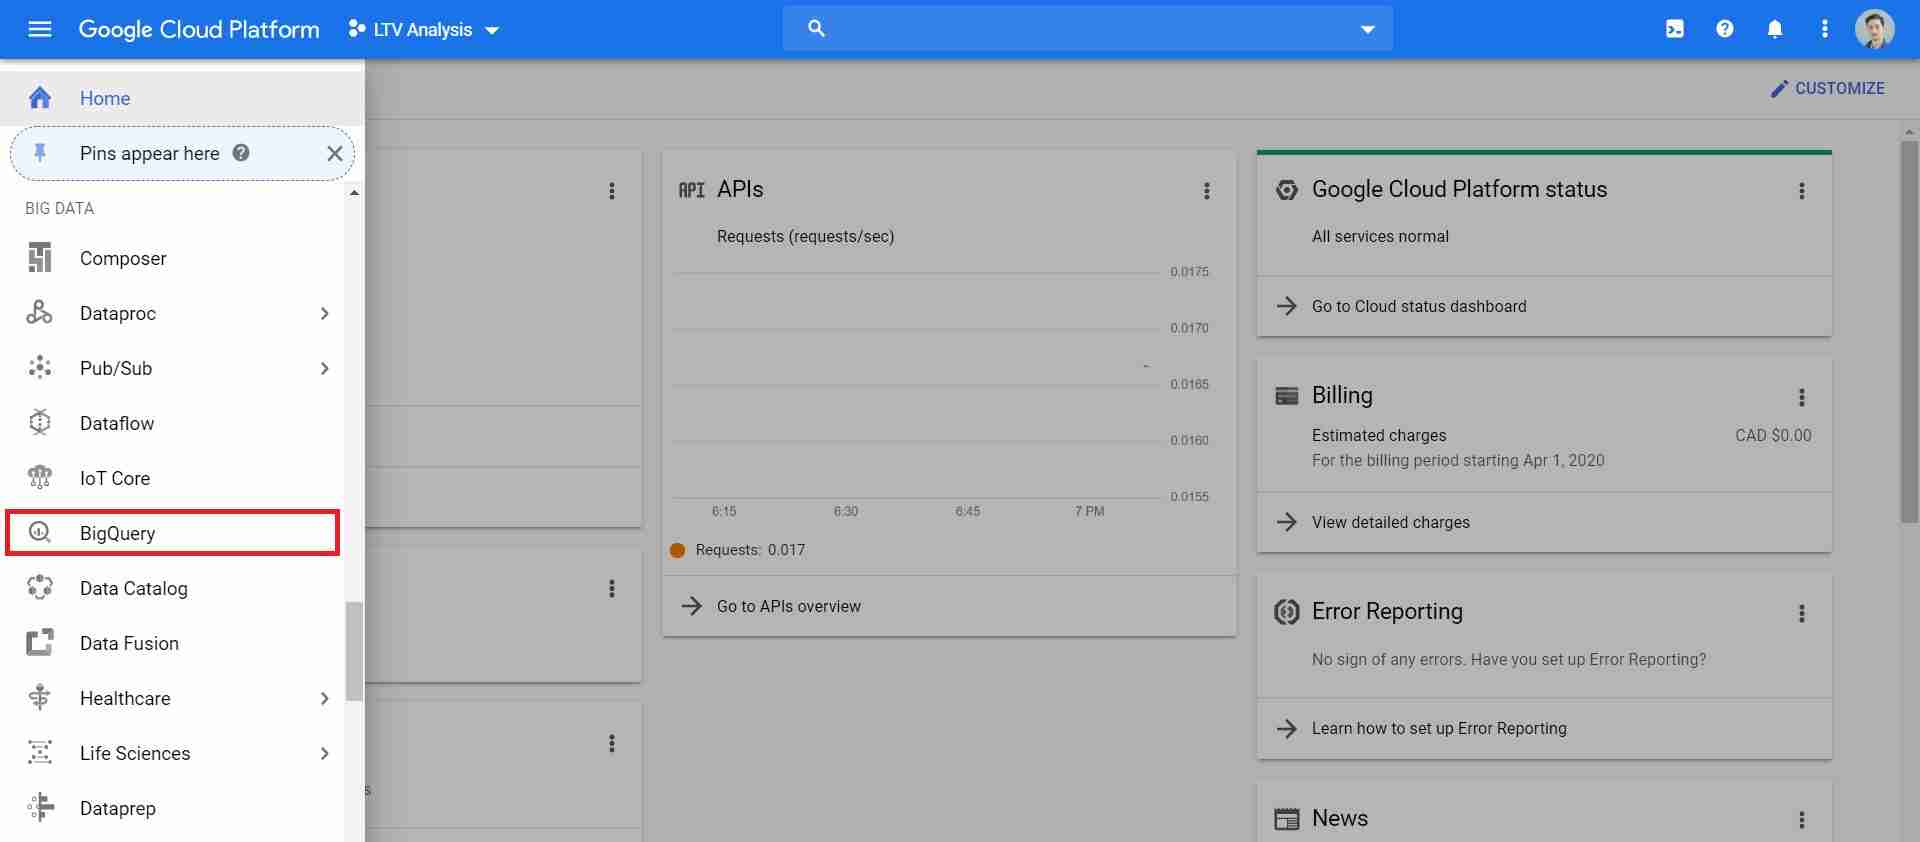 google cloud platform navigation menu with bigquery selected